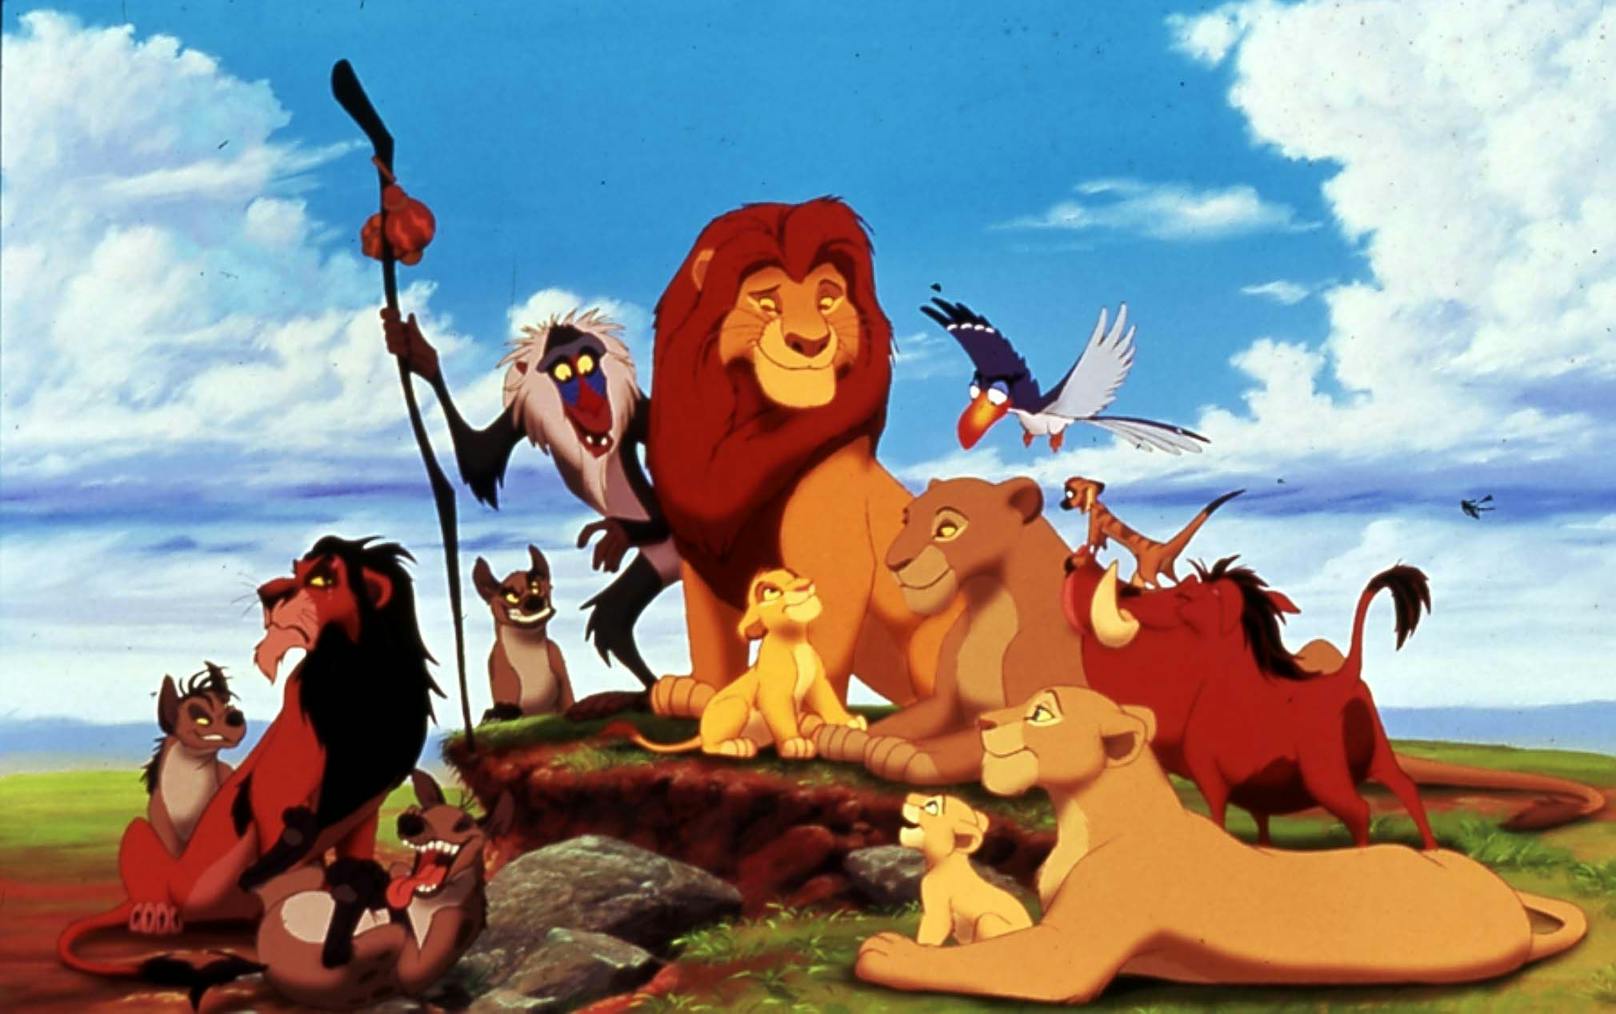 Der Zeichentrickfilm "König der Löwen" erschien 1994.